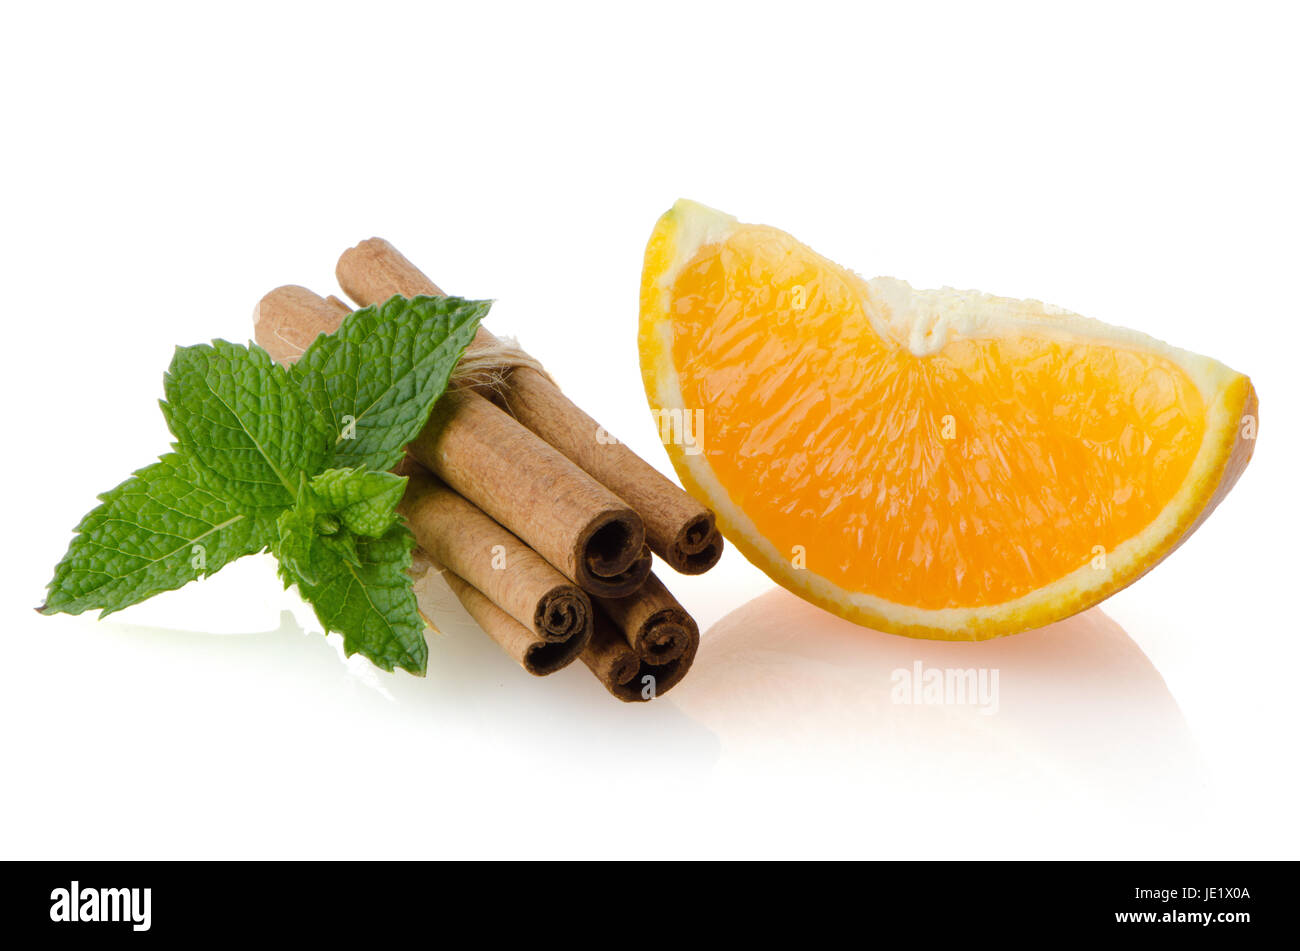 One orange fruit segment or cantle isolated on white background. Stock Photo